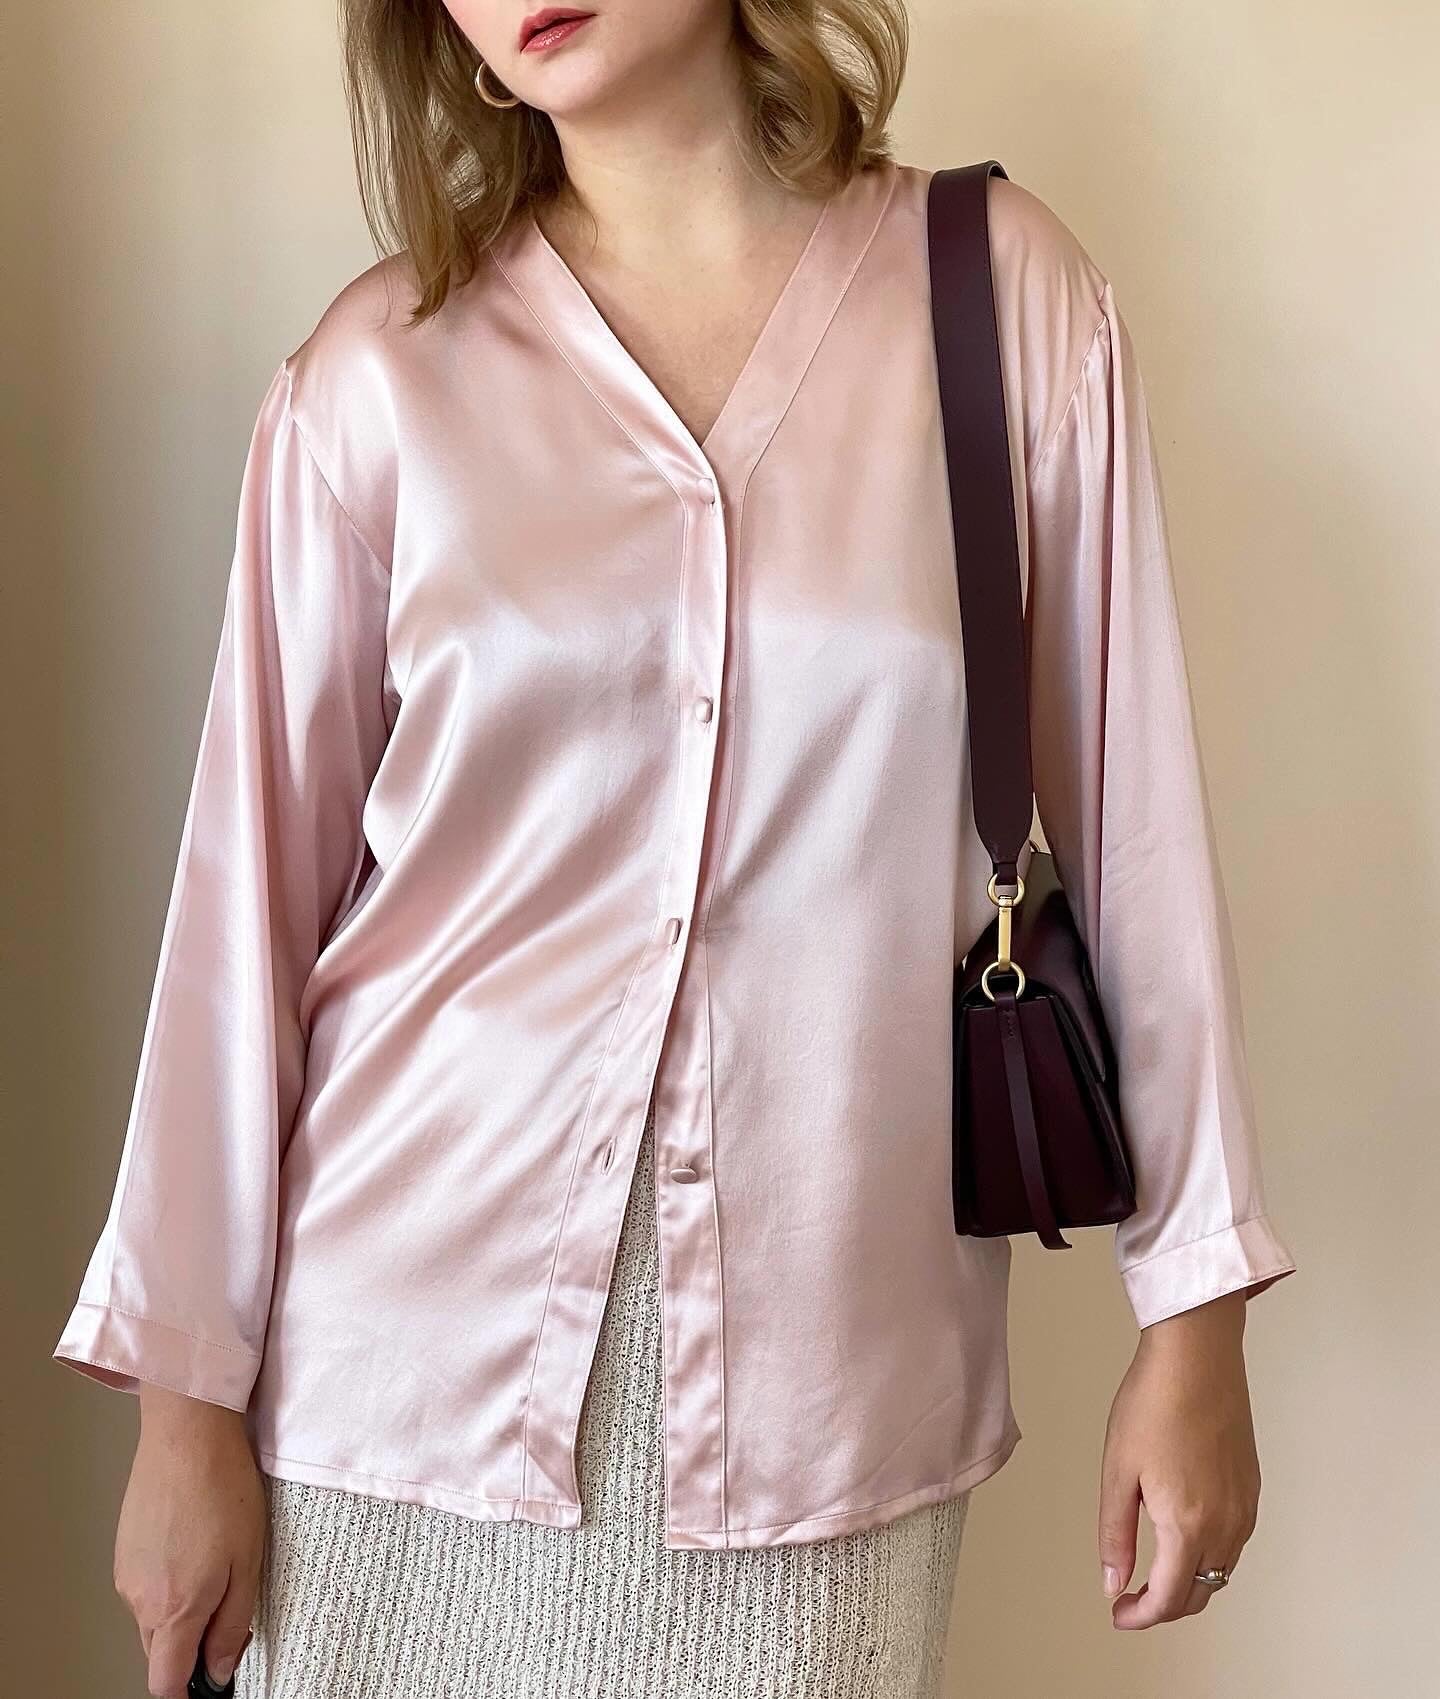 Elegant vintage pink blouse in pajama style